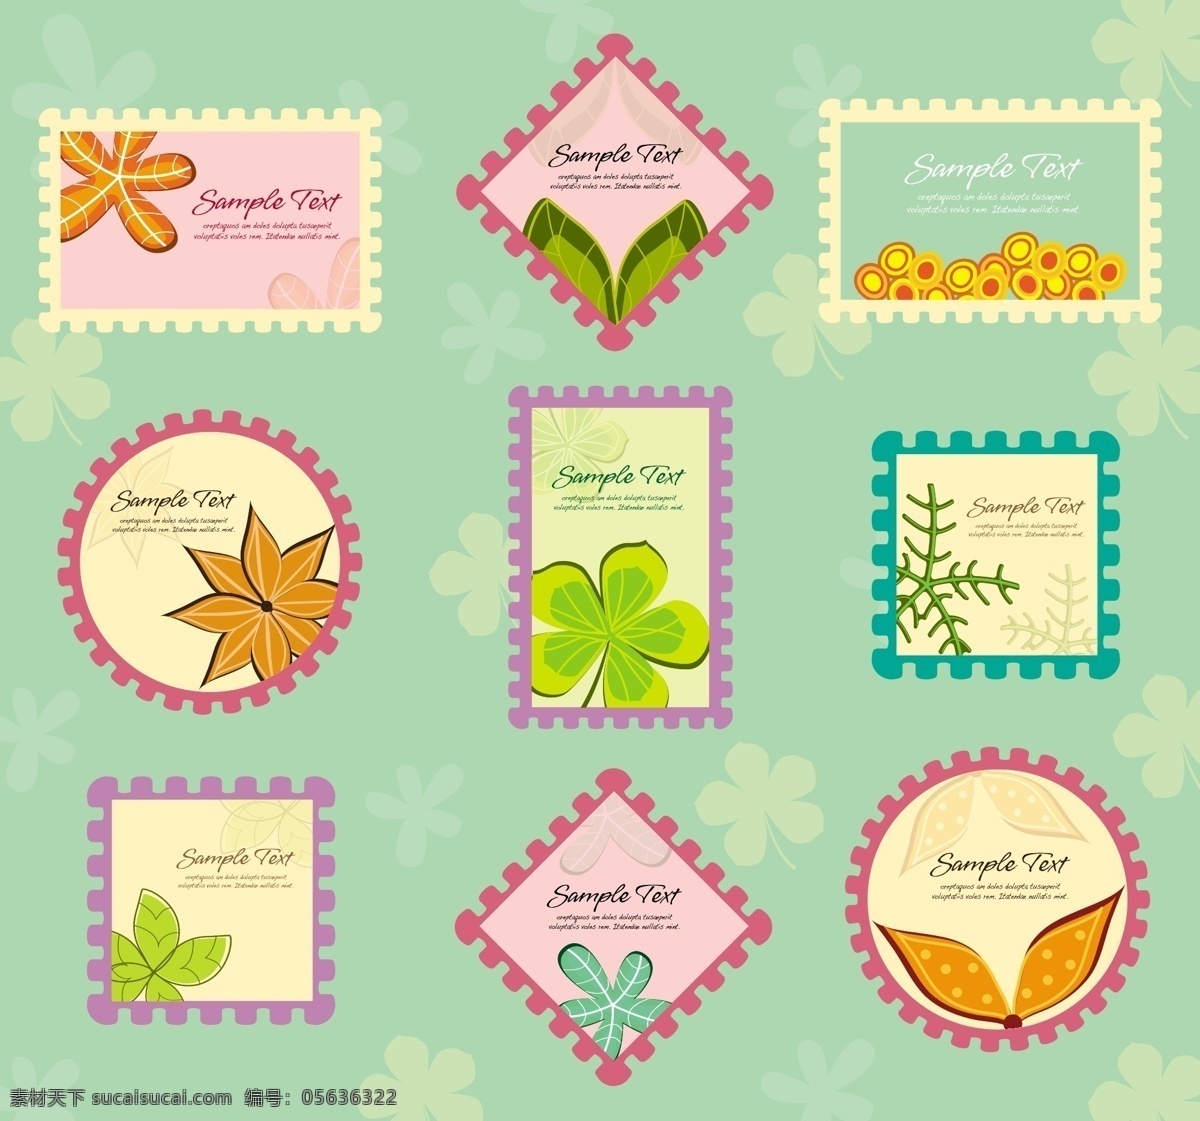 花卉邮票 花 标签 花香 徽章 印章 模板 叶 文字 植物 颜色 三叶草 粉彩 邮票 离开 样本 样本文字 柔和的色彩 绿色